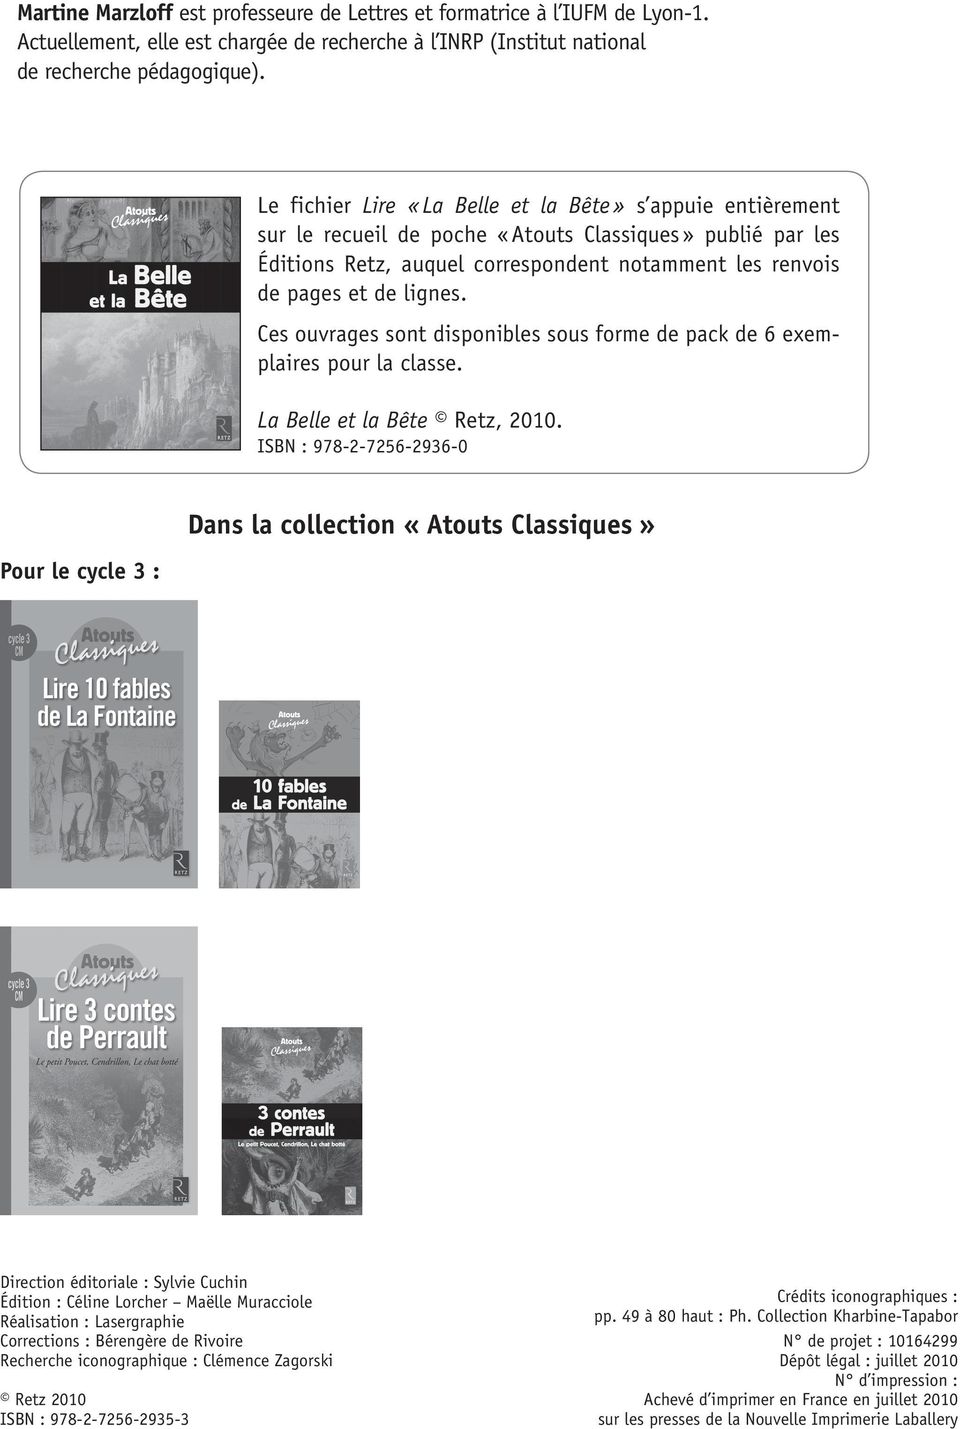 Ces ouvrages sont disponibles sous forme de pack de 6 exemplaires pour la classe. La Belle et la Bête Retz, 2010.